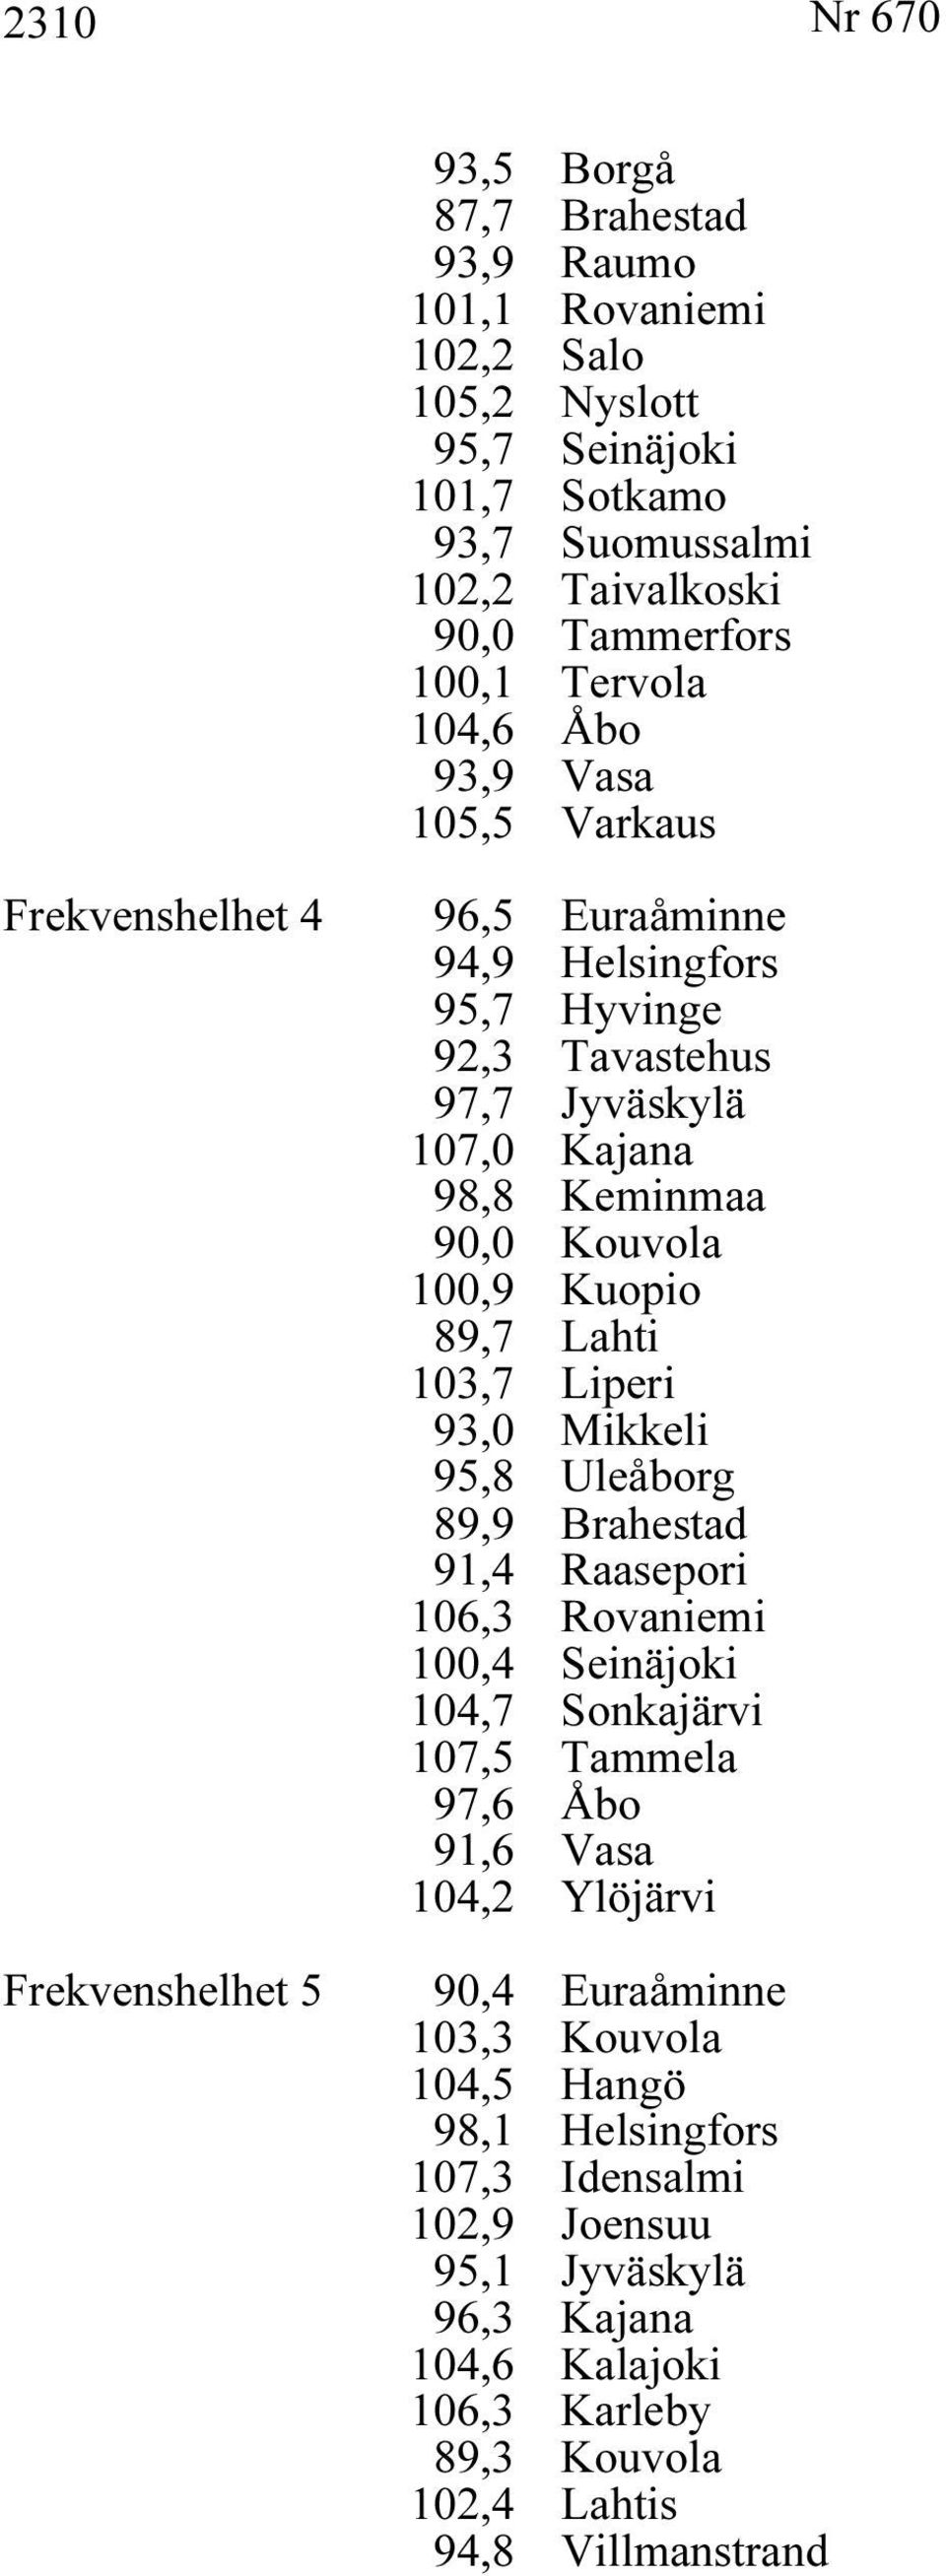 100,9 Kuopio 89,7 Lahti 103,7 Liperi 93,0 Mikkeli 95,8 Uleåborg 89,9 Brahestad 91,4 Raasepori 106,3 Rovaniemi 100,4 Seinäjoki 104,7 Sonkajärvi 107,5 Tammela 97,6 Åbo 91,6 Vasa 104,2